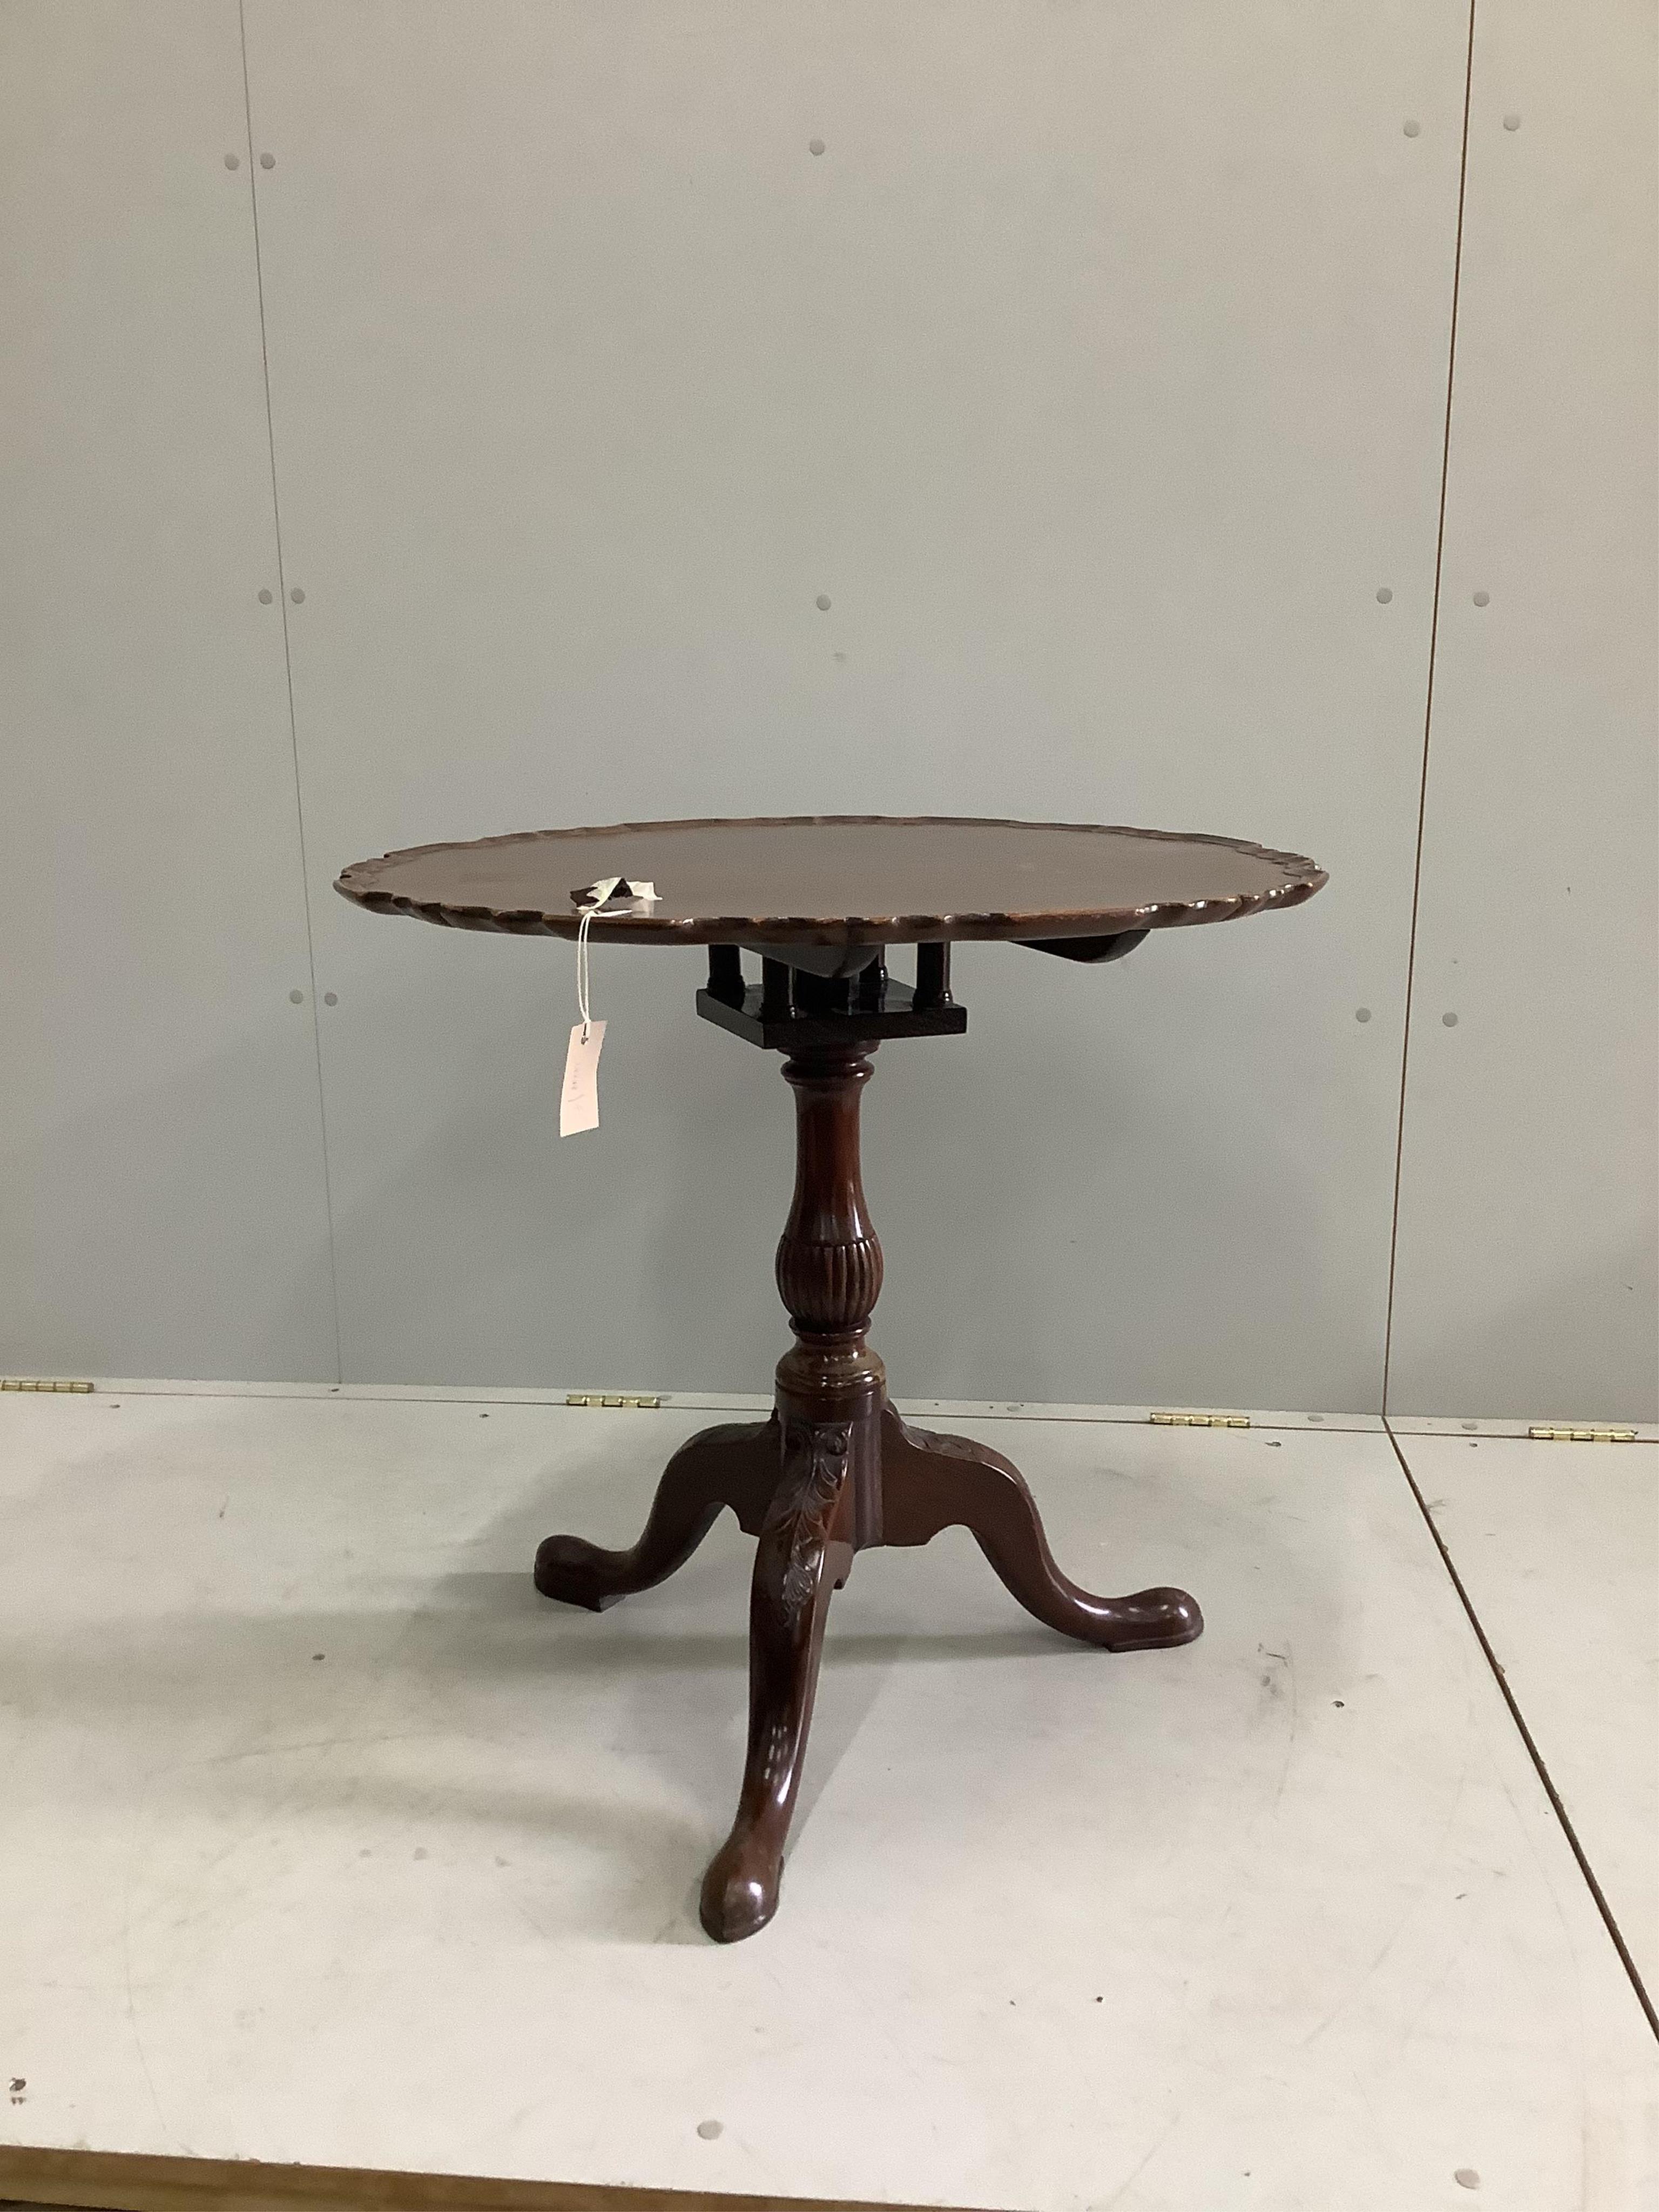 A George III style mahogany tilt top birdcage tea table, diameter 74cm, height 71cm. Condition - fair